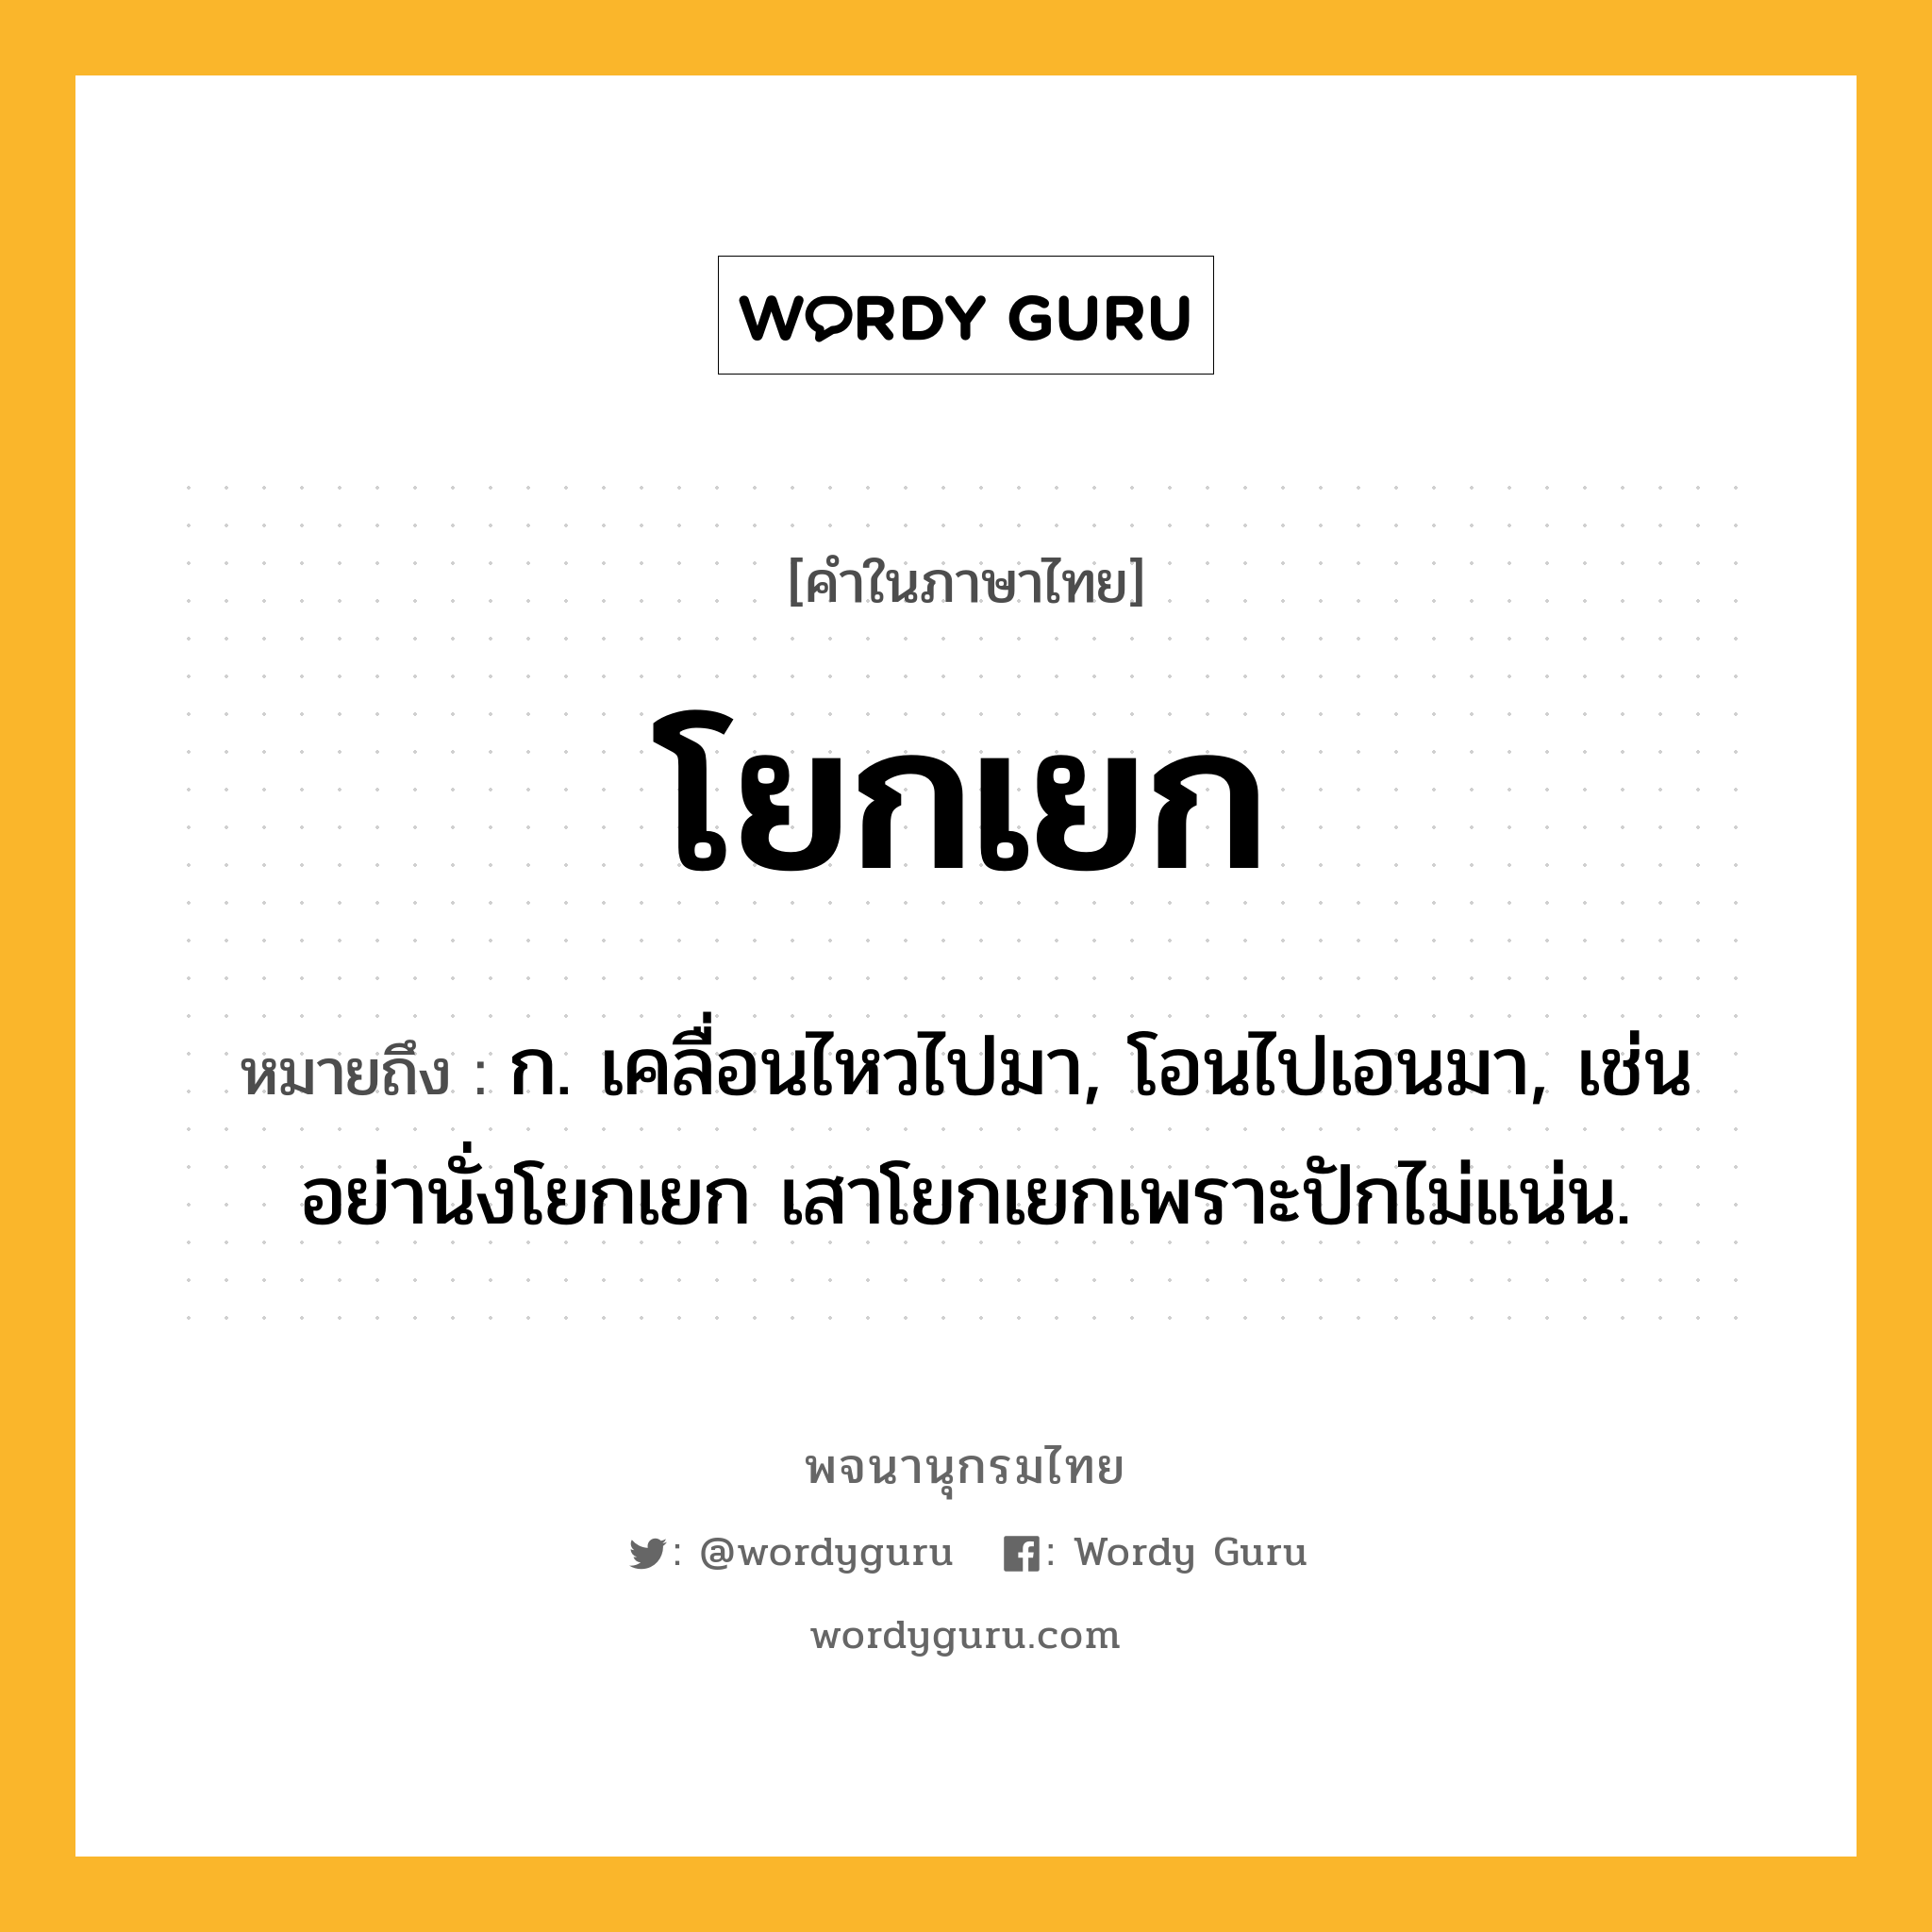 โยกเยก หมายถึงอะไร?, คำในภาษาไทย โยกเยก หมายถึง ก. เคลื่อนไหวไปมา, โอนไปเอนมา, เช่น อย่านั่งโยกเยก เสาโยกเยกเพราะปักไม่แน่น.